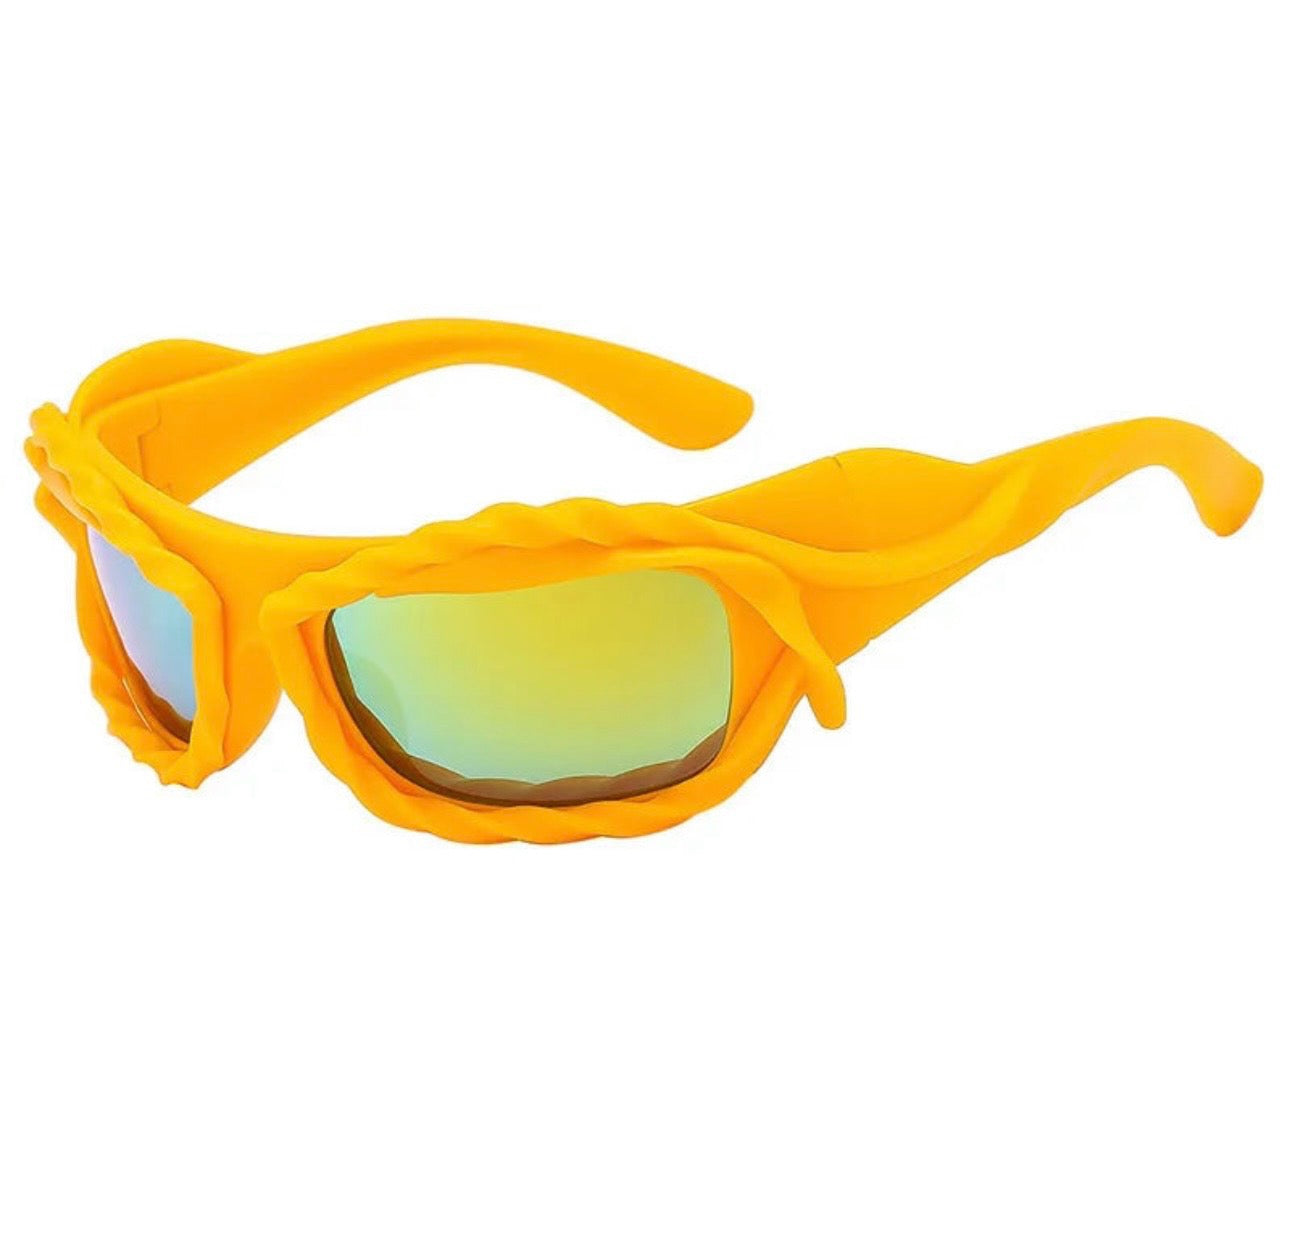 The Shade Runner Sunglasses